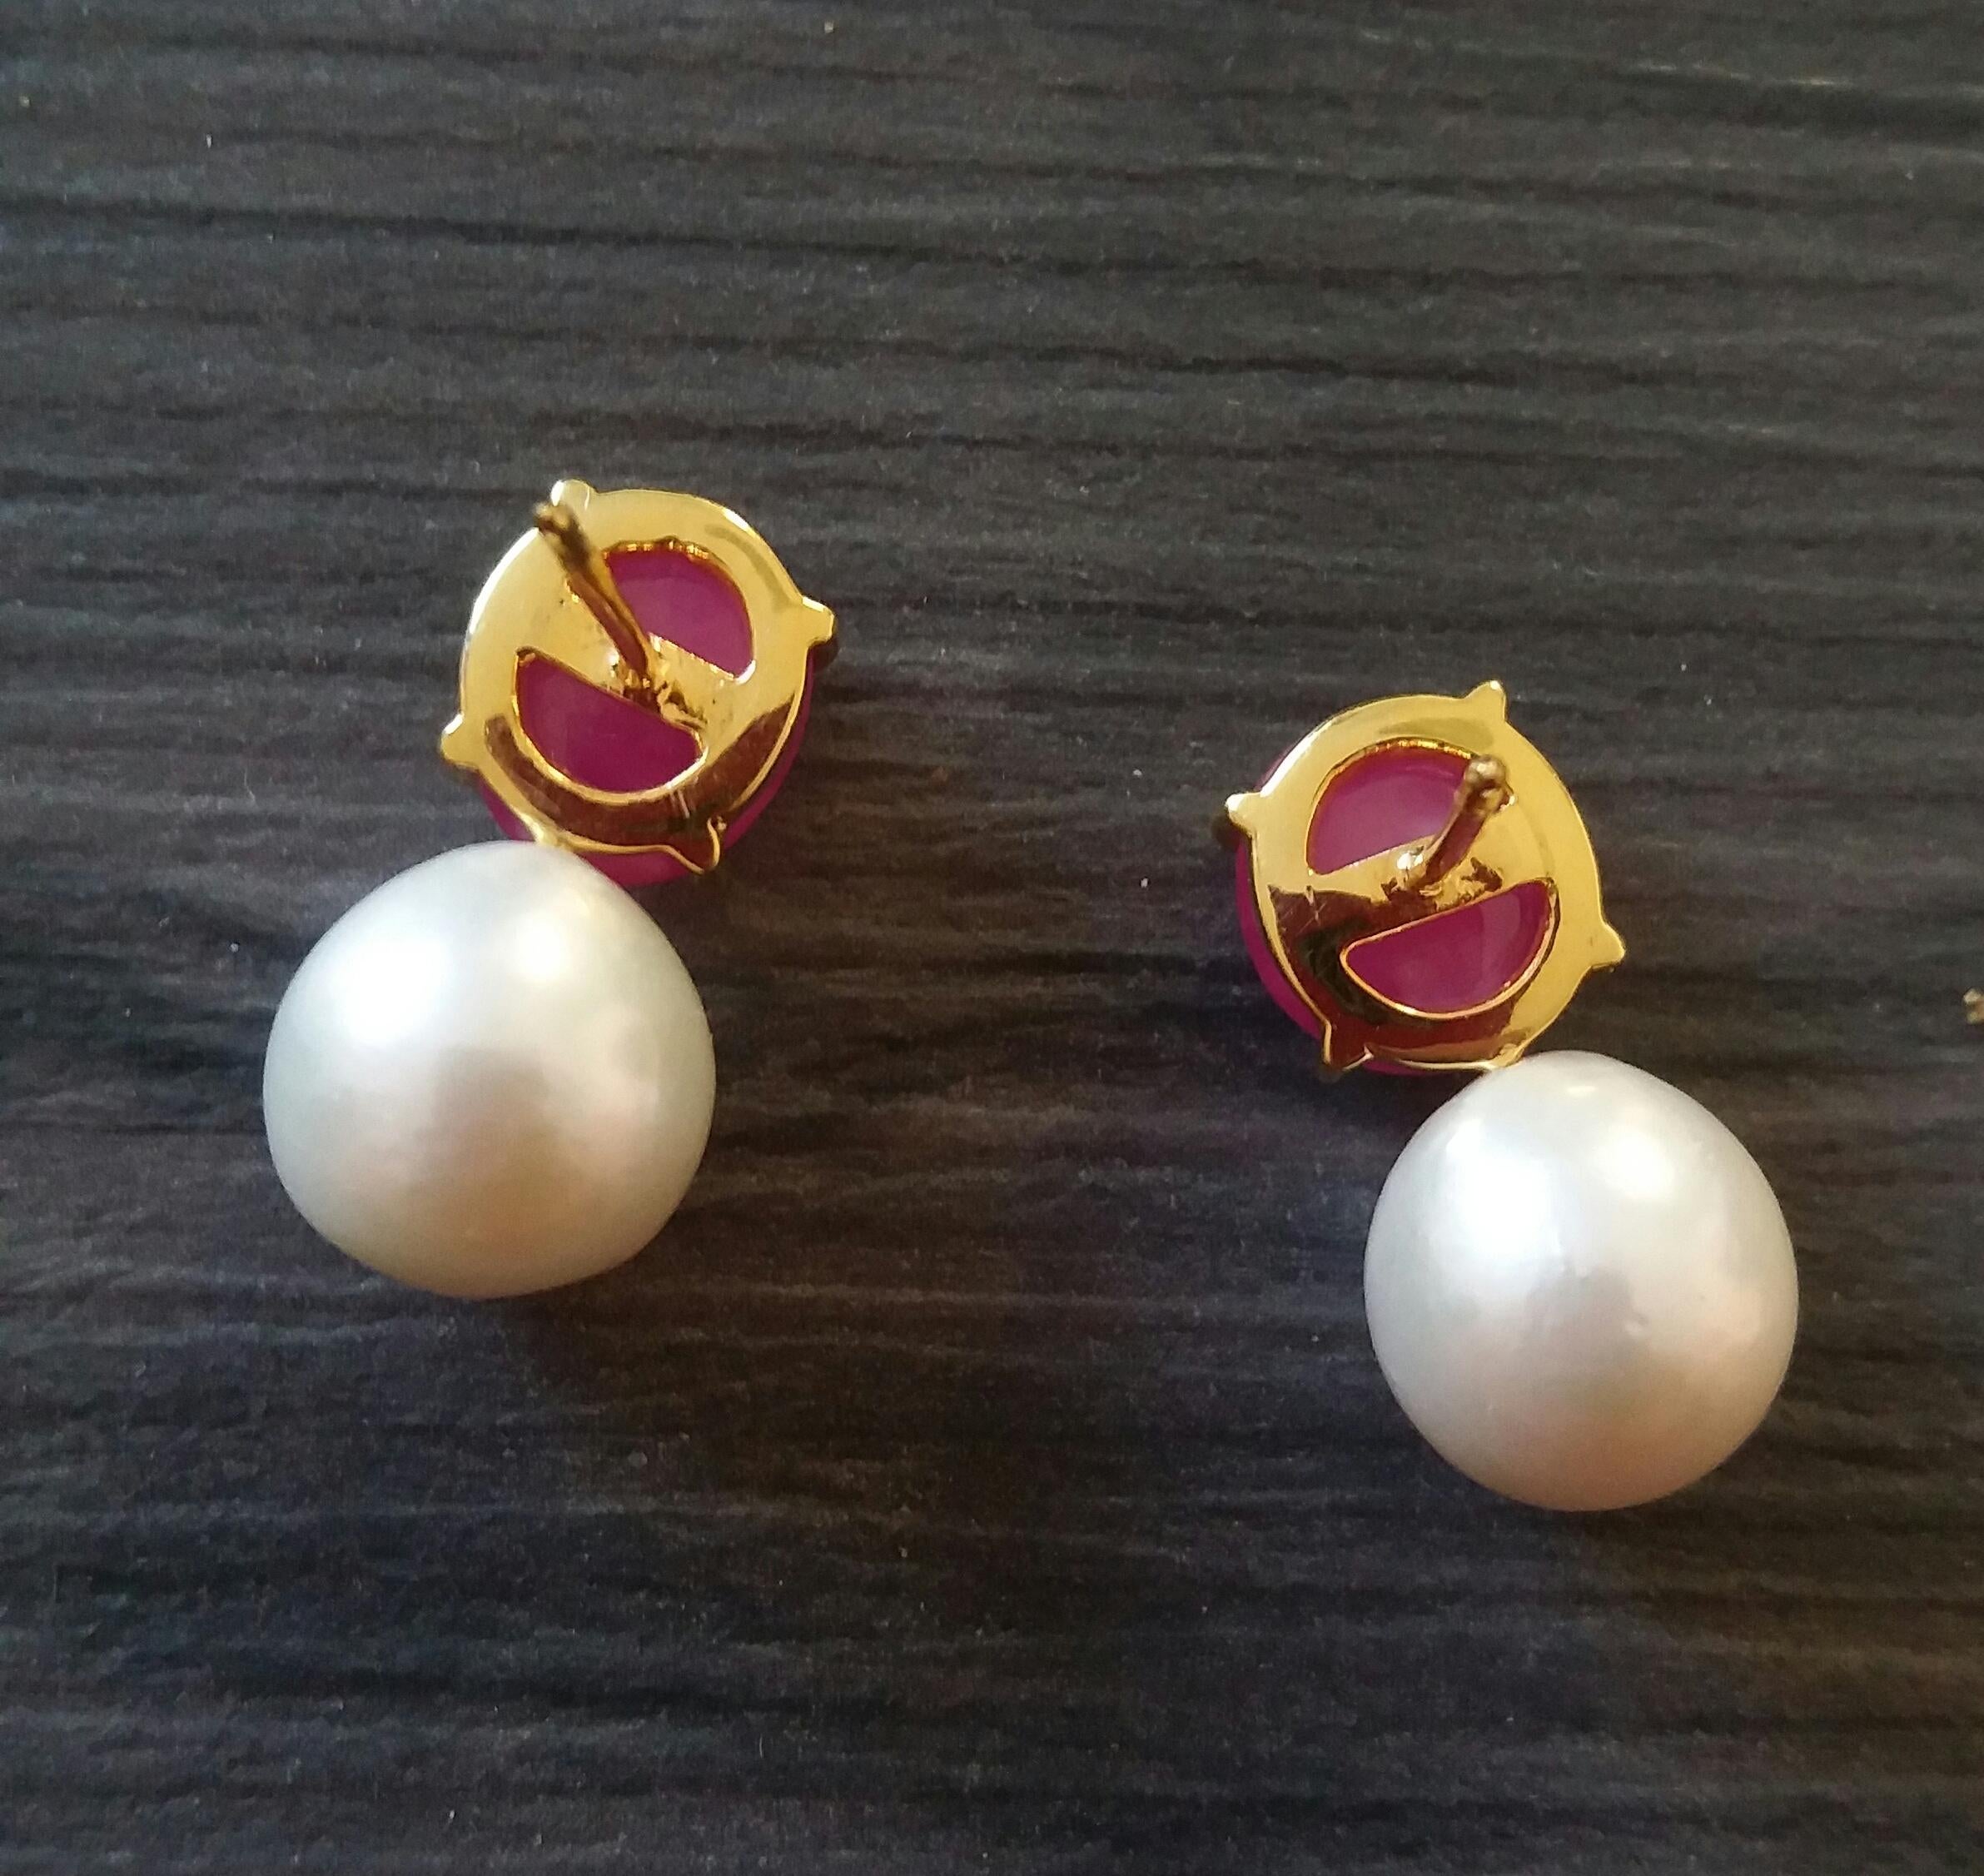 Schlichte, schicke Ohrringe mit einem Oberteil aus 2 ovalen Rubin-Cabochons (11 x 10 mm), gefasst in 14 Kt. Gelb, an denen 2 weiße Barockperlen von 12 mm Durchmesser befestigt sind.

1978 begann unser Atelier in Italien mit der Herstellung von